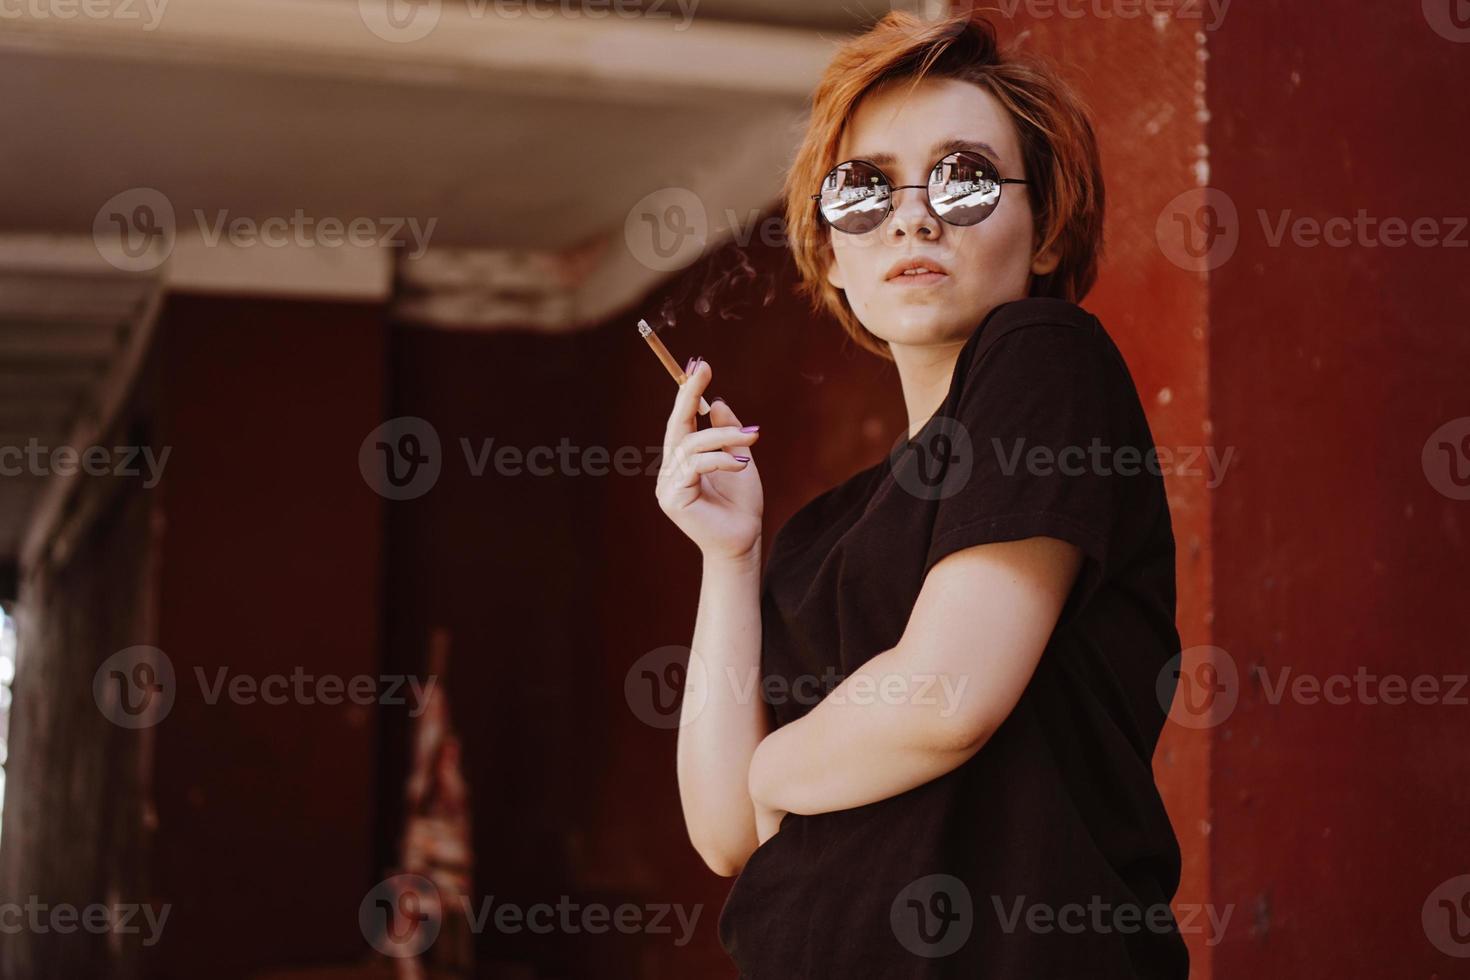 ragazza con capelli corti rossi e occhiali da sole a specchio che fuma sigaretta foto